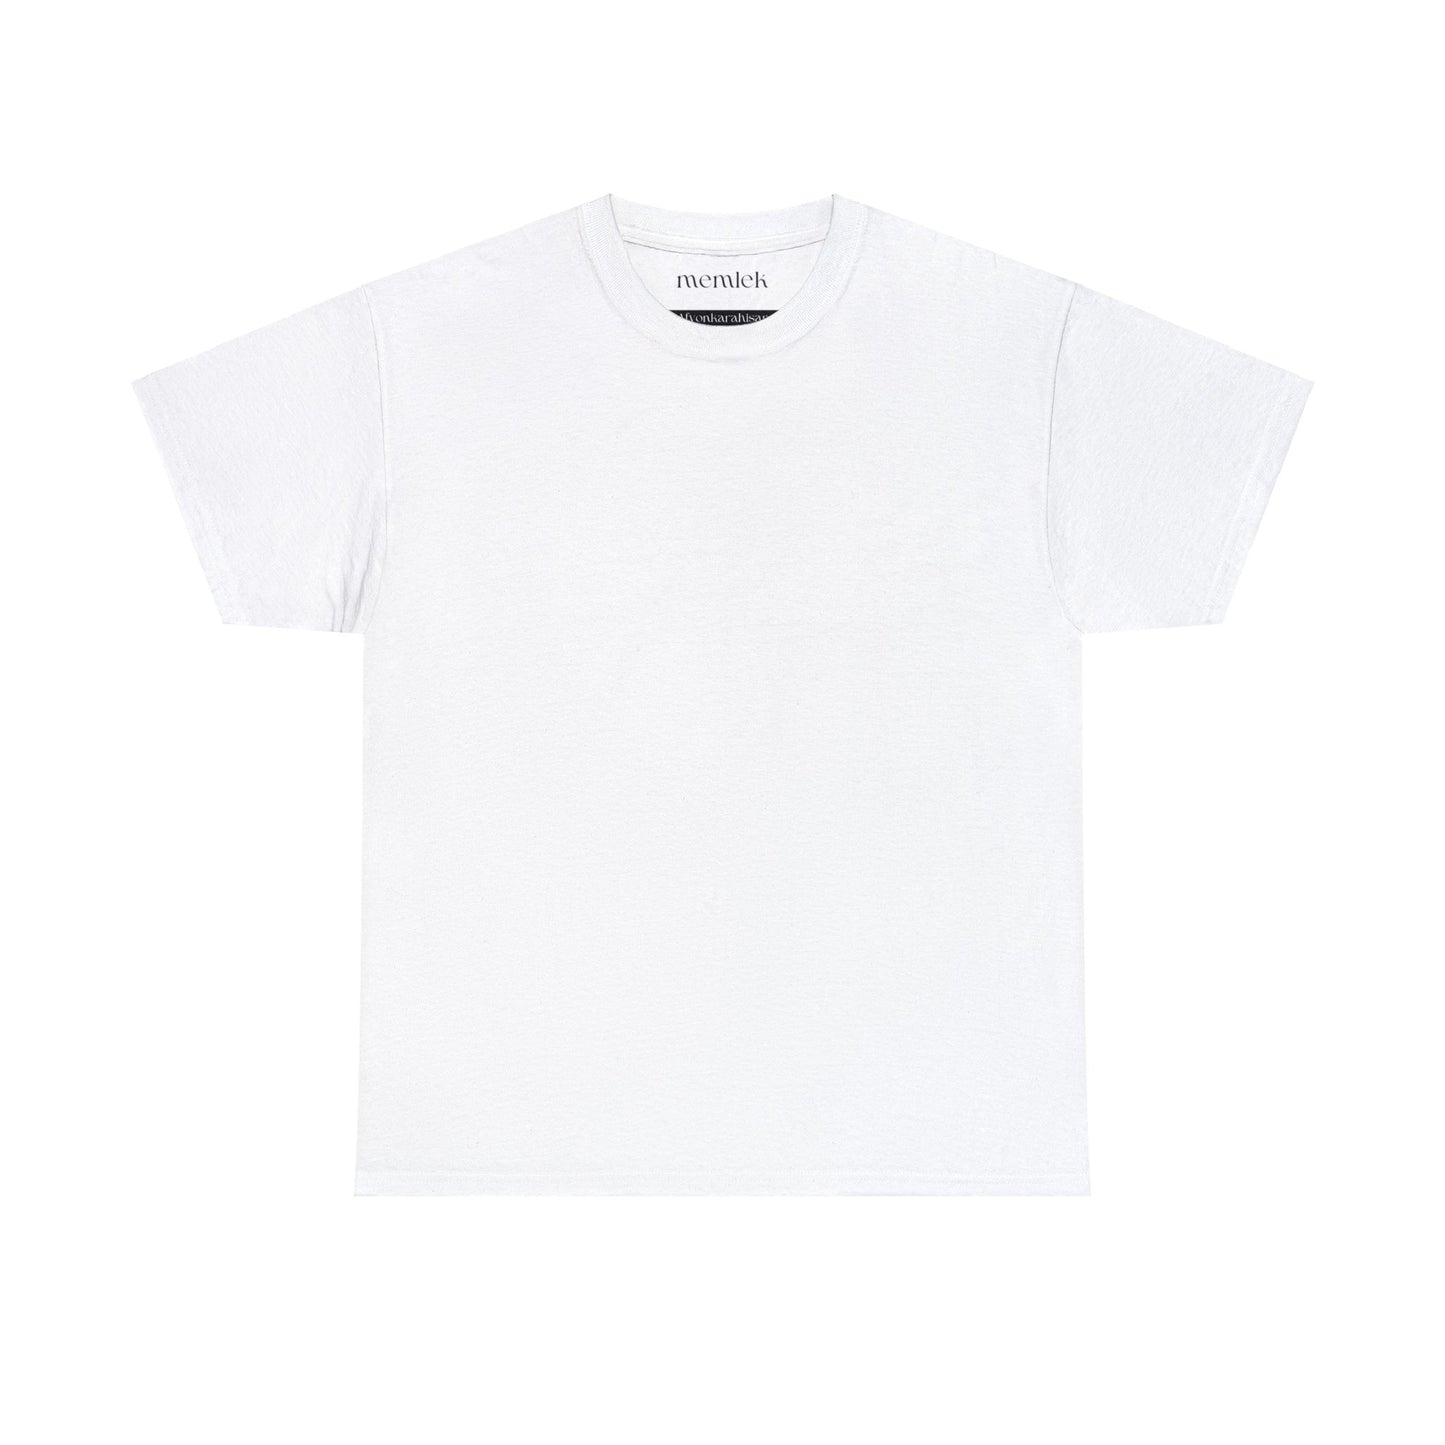 Siyah Lale - 03 Afyonkarahisar - T-Shirt - Back Print - Black/White